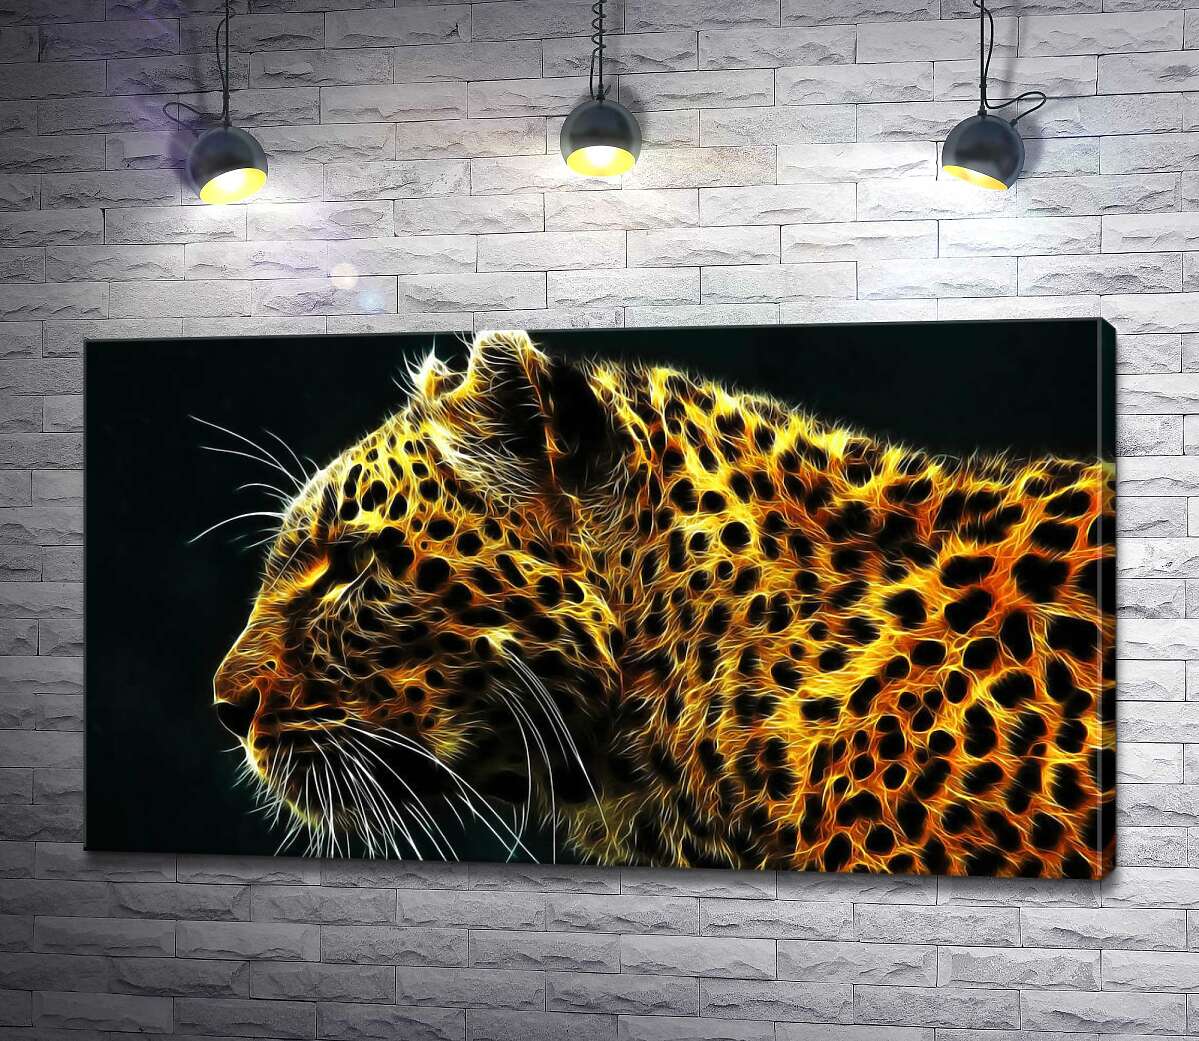 картина Темные пятна на огненно-желтой шерсти леопарда